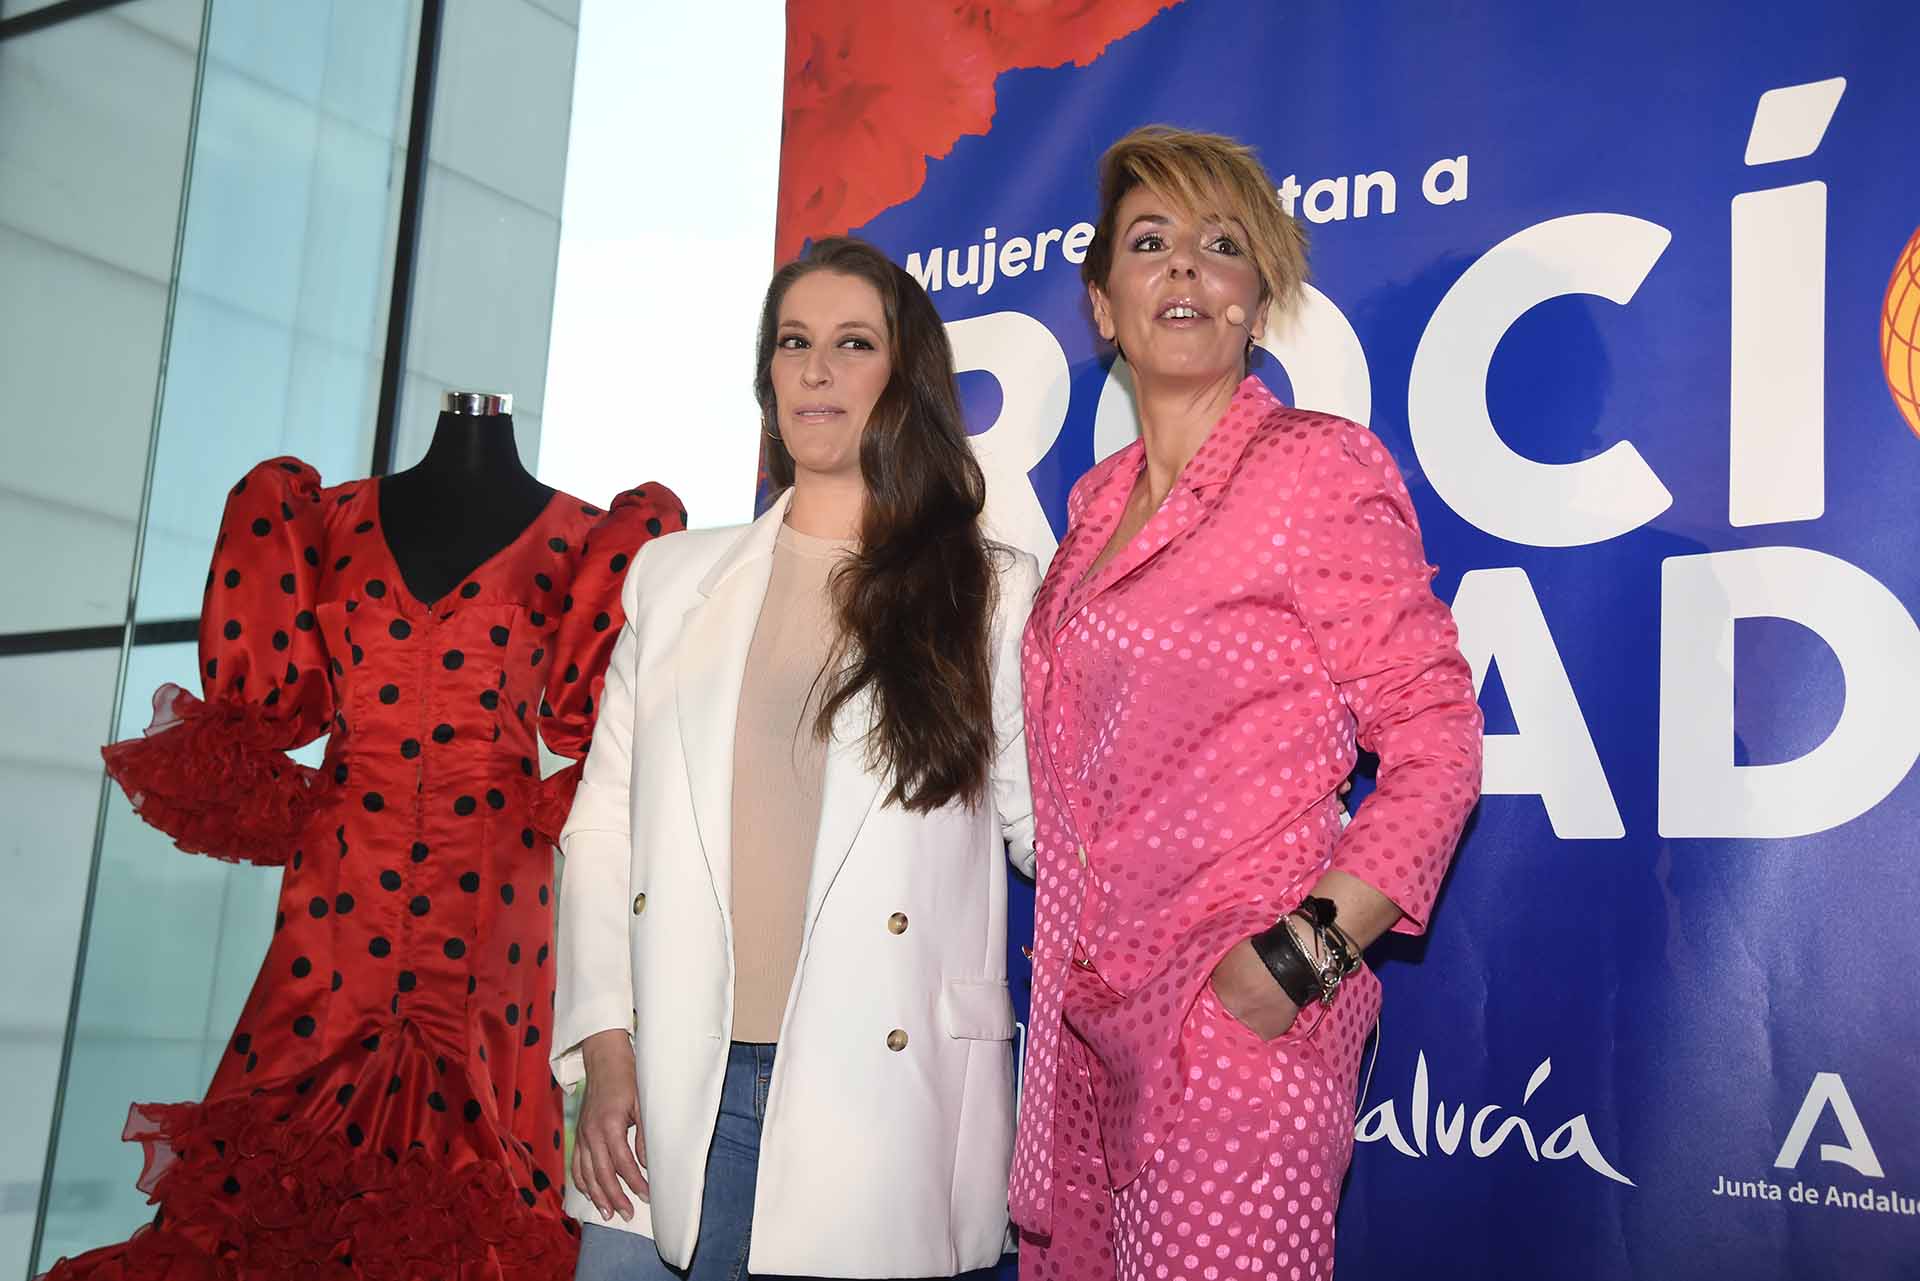 Rocio Carrasco during the presentation of show " Mujeres cantan a RocÃ­o Jurado " in Seville on Wednesday, April 27, 2022.